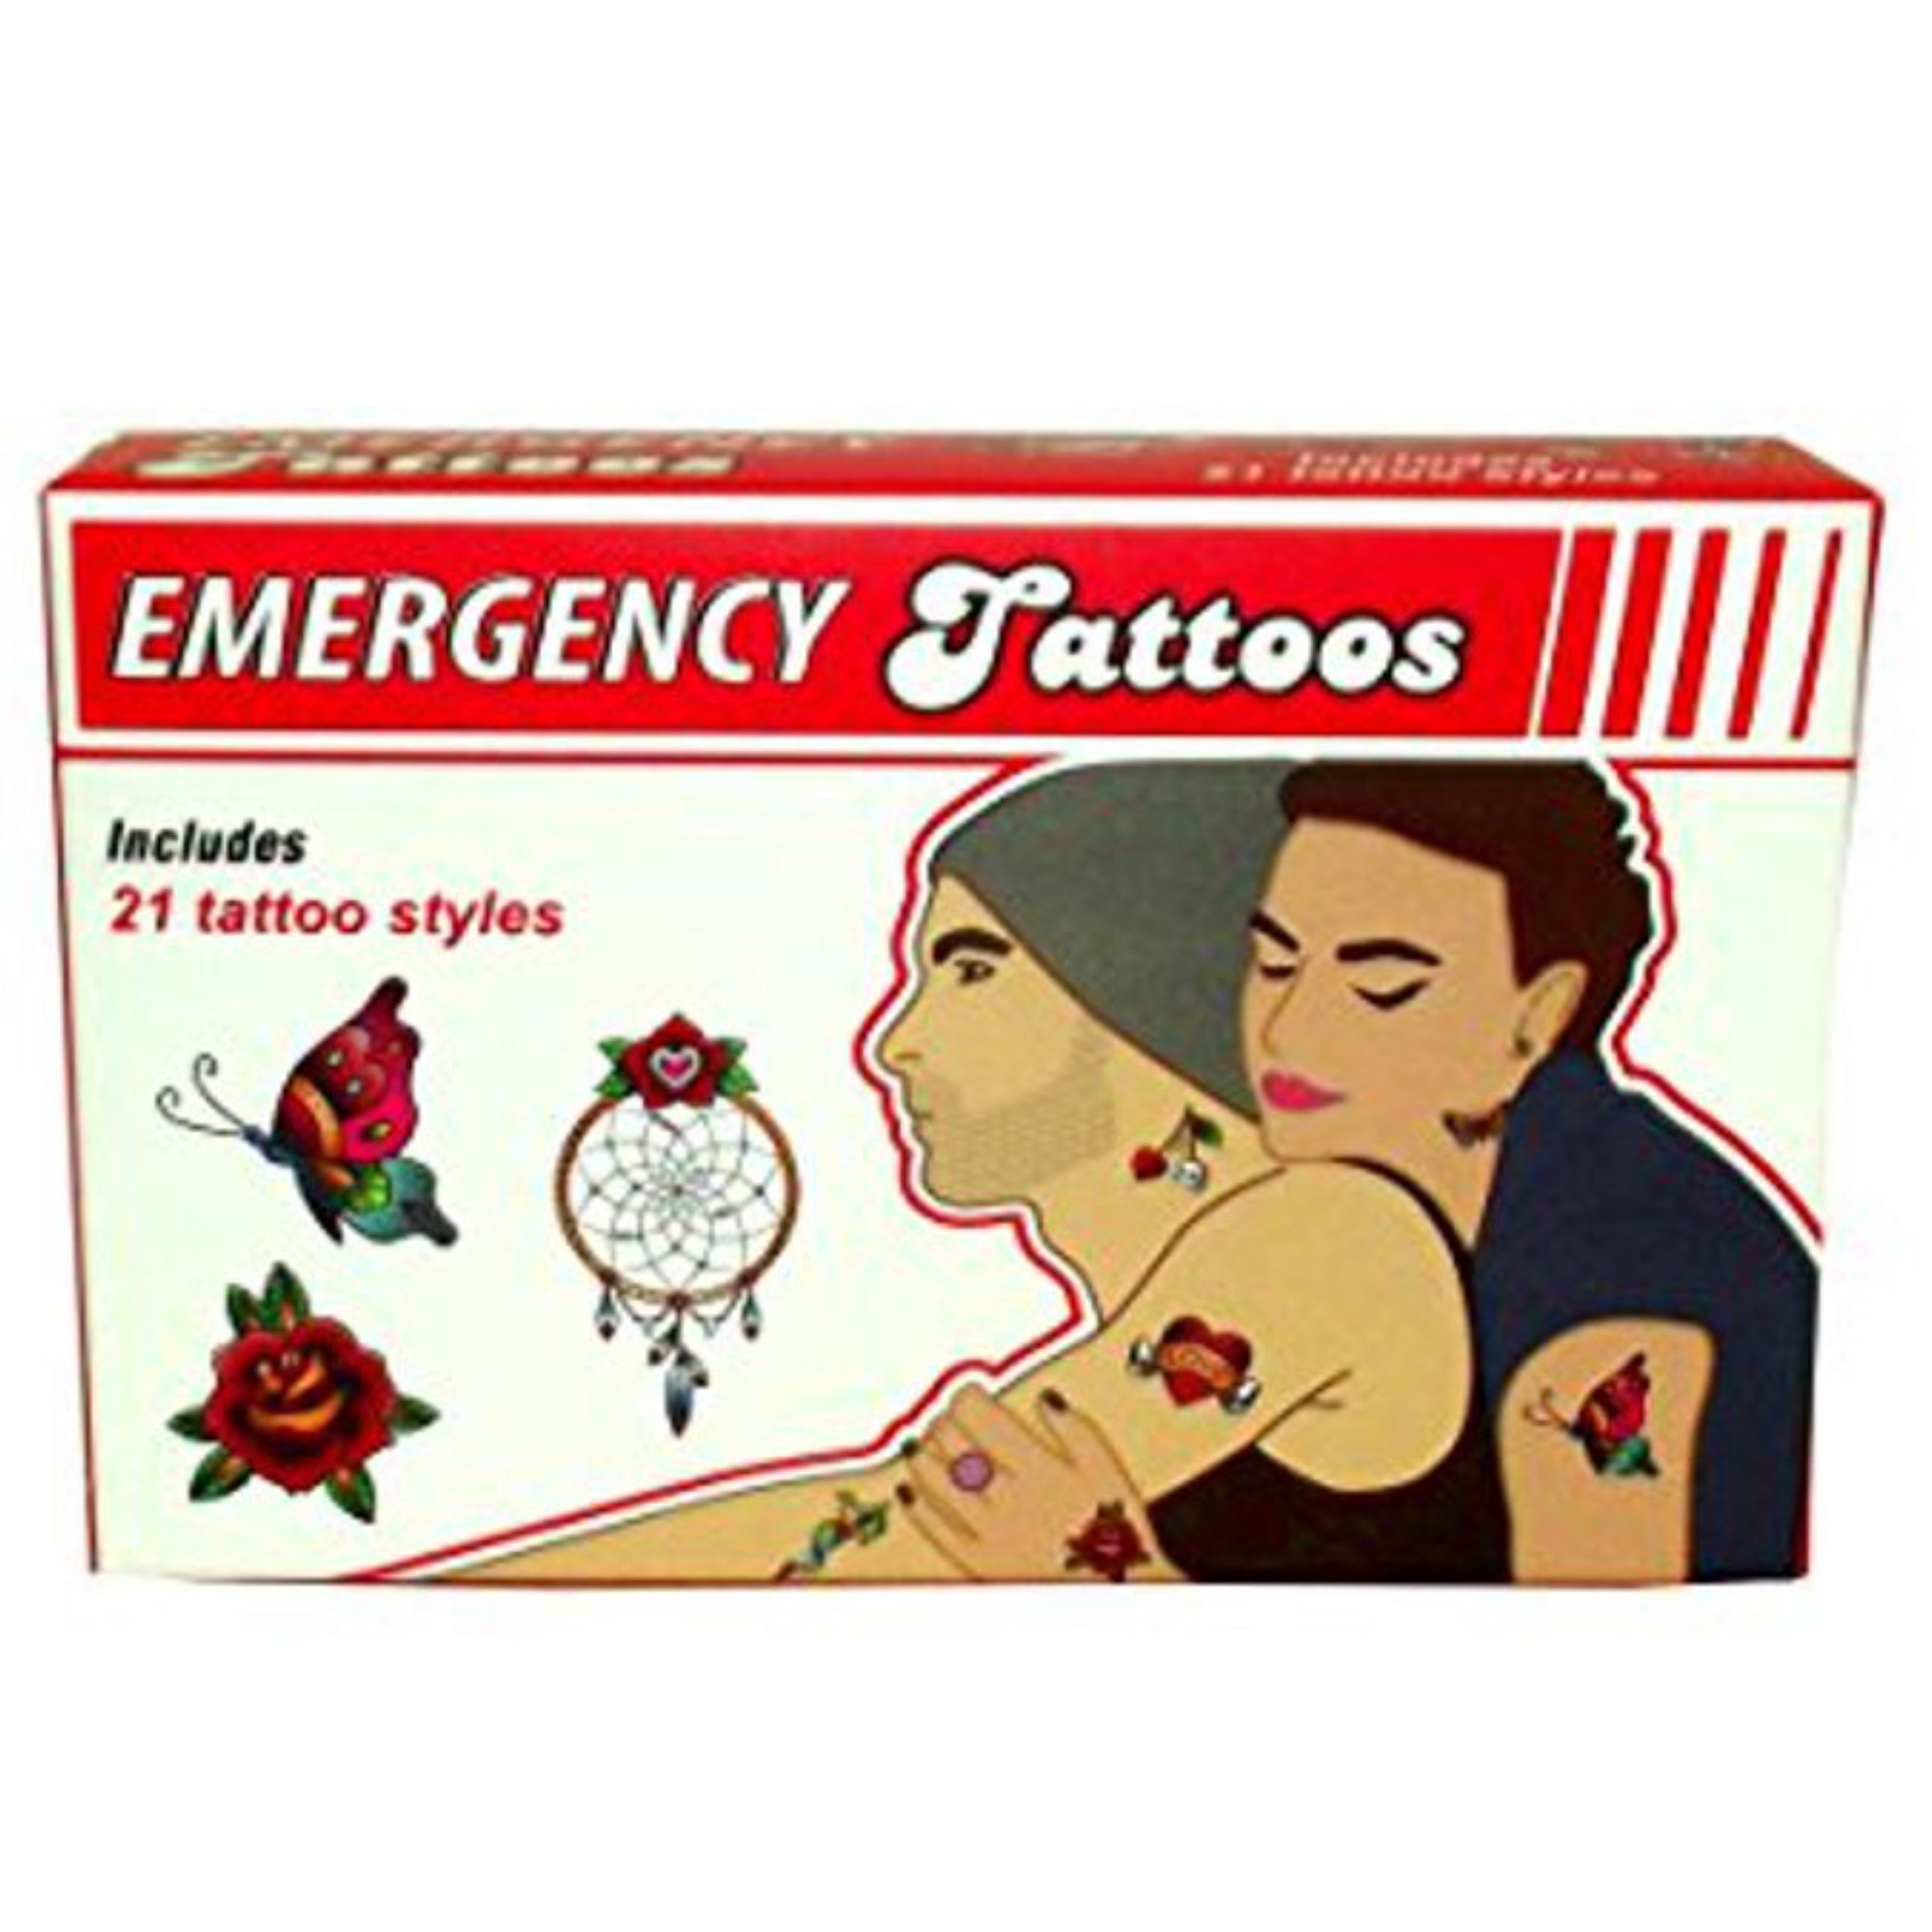 Emergency Tattoos